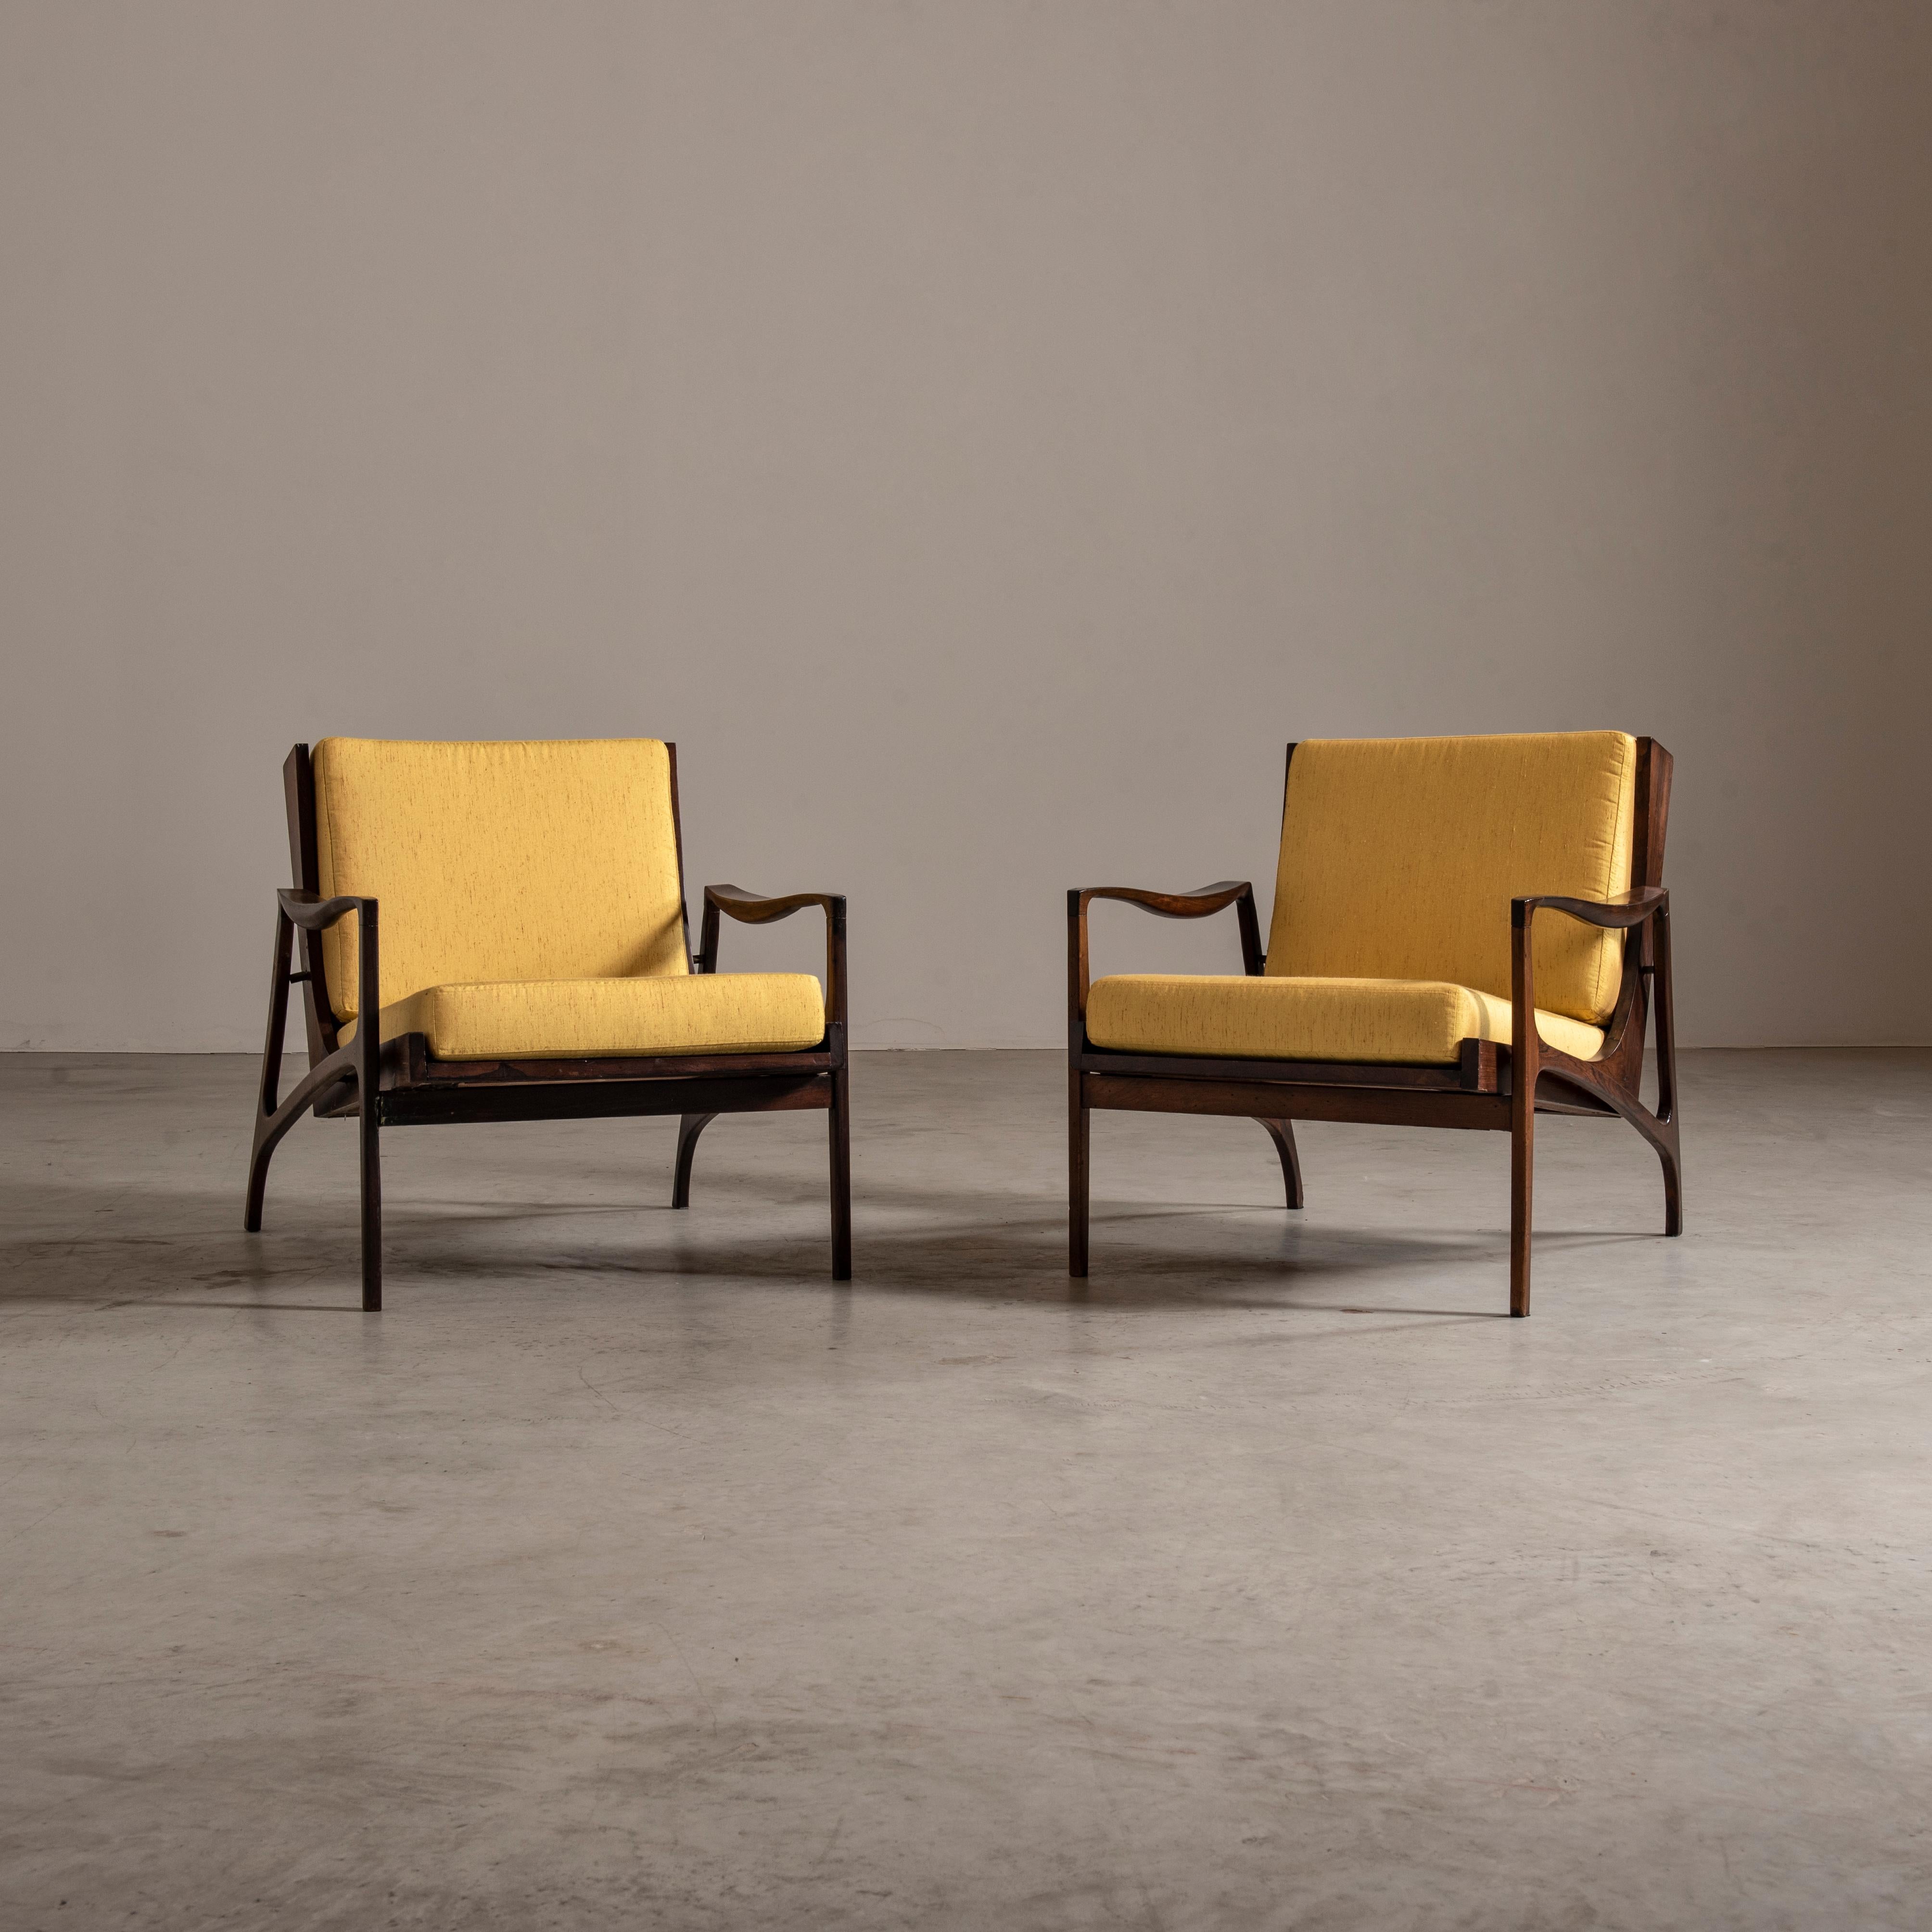 Diese sorgfältig aus massivem brasilianischem Hartholz gefertigten Stühle strahlen Eleganz und Raffinesse aus. Kürzlich mit einem atemberaubenden gelben Stoff neu bezogen, bieten sie einen lebendigen Farbakzent, der jedes Interieur mühelos